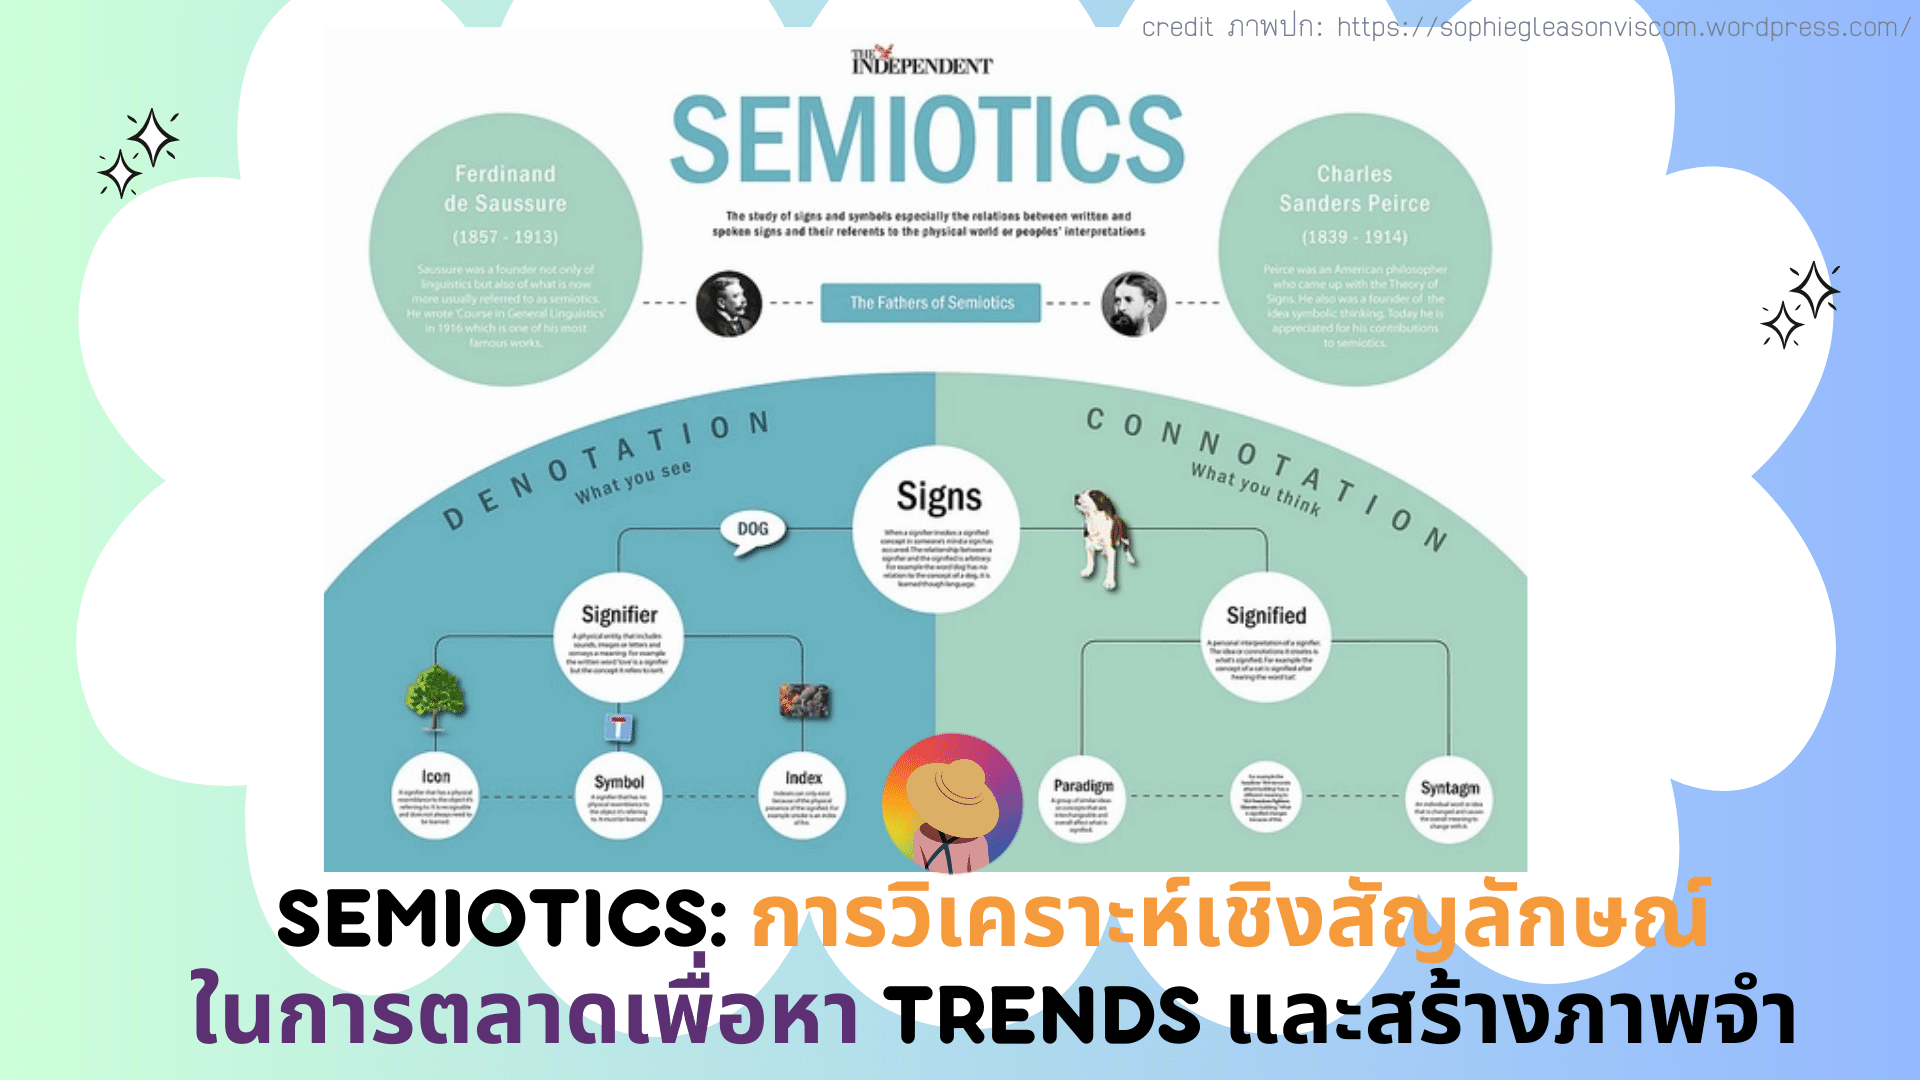 Semiotics: การวิเคราะห์เชิงสัญลักษณ์ในการตลาดเพื่อหา Trends และสร้างภาพจำ